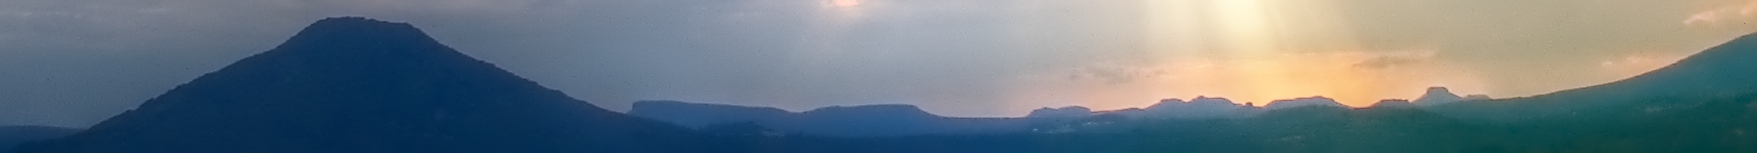 Vlevo Růžovský vrch známý z obrazů Caspara Davida Friedricha, vlevo uprostřed Grosser Zschirnstein a Kleiner Zschirnstein, vpravo uprostřed malý Pfaffenstein, dále seskupené Gorisch, Papstein, malý skalní vrcholek Zirkelsteinu, vpravo stolová hora Lillienstein, za ní skalní pevnost Königstein, úplně vpravo začíná hlavní hřeben Českosaského Švýcarska s Pravčickou bránou